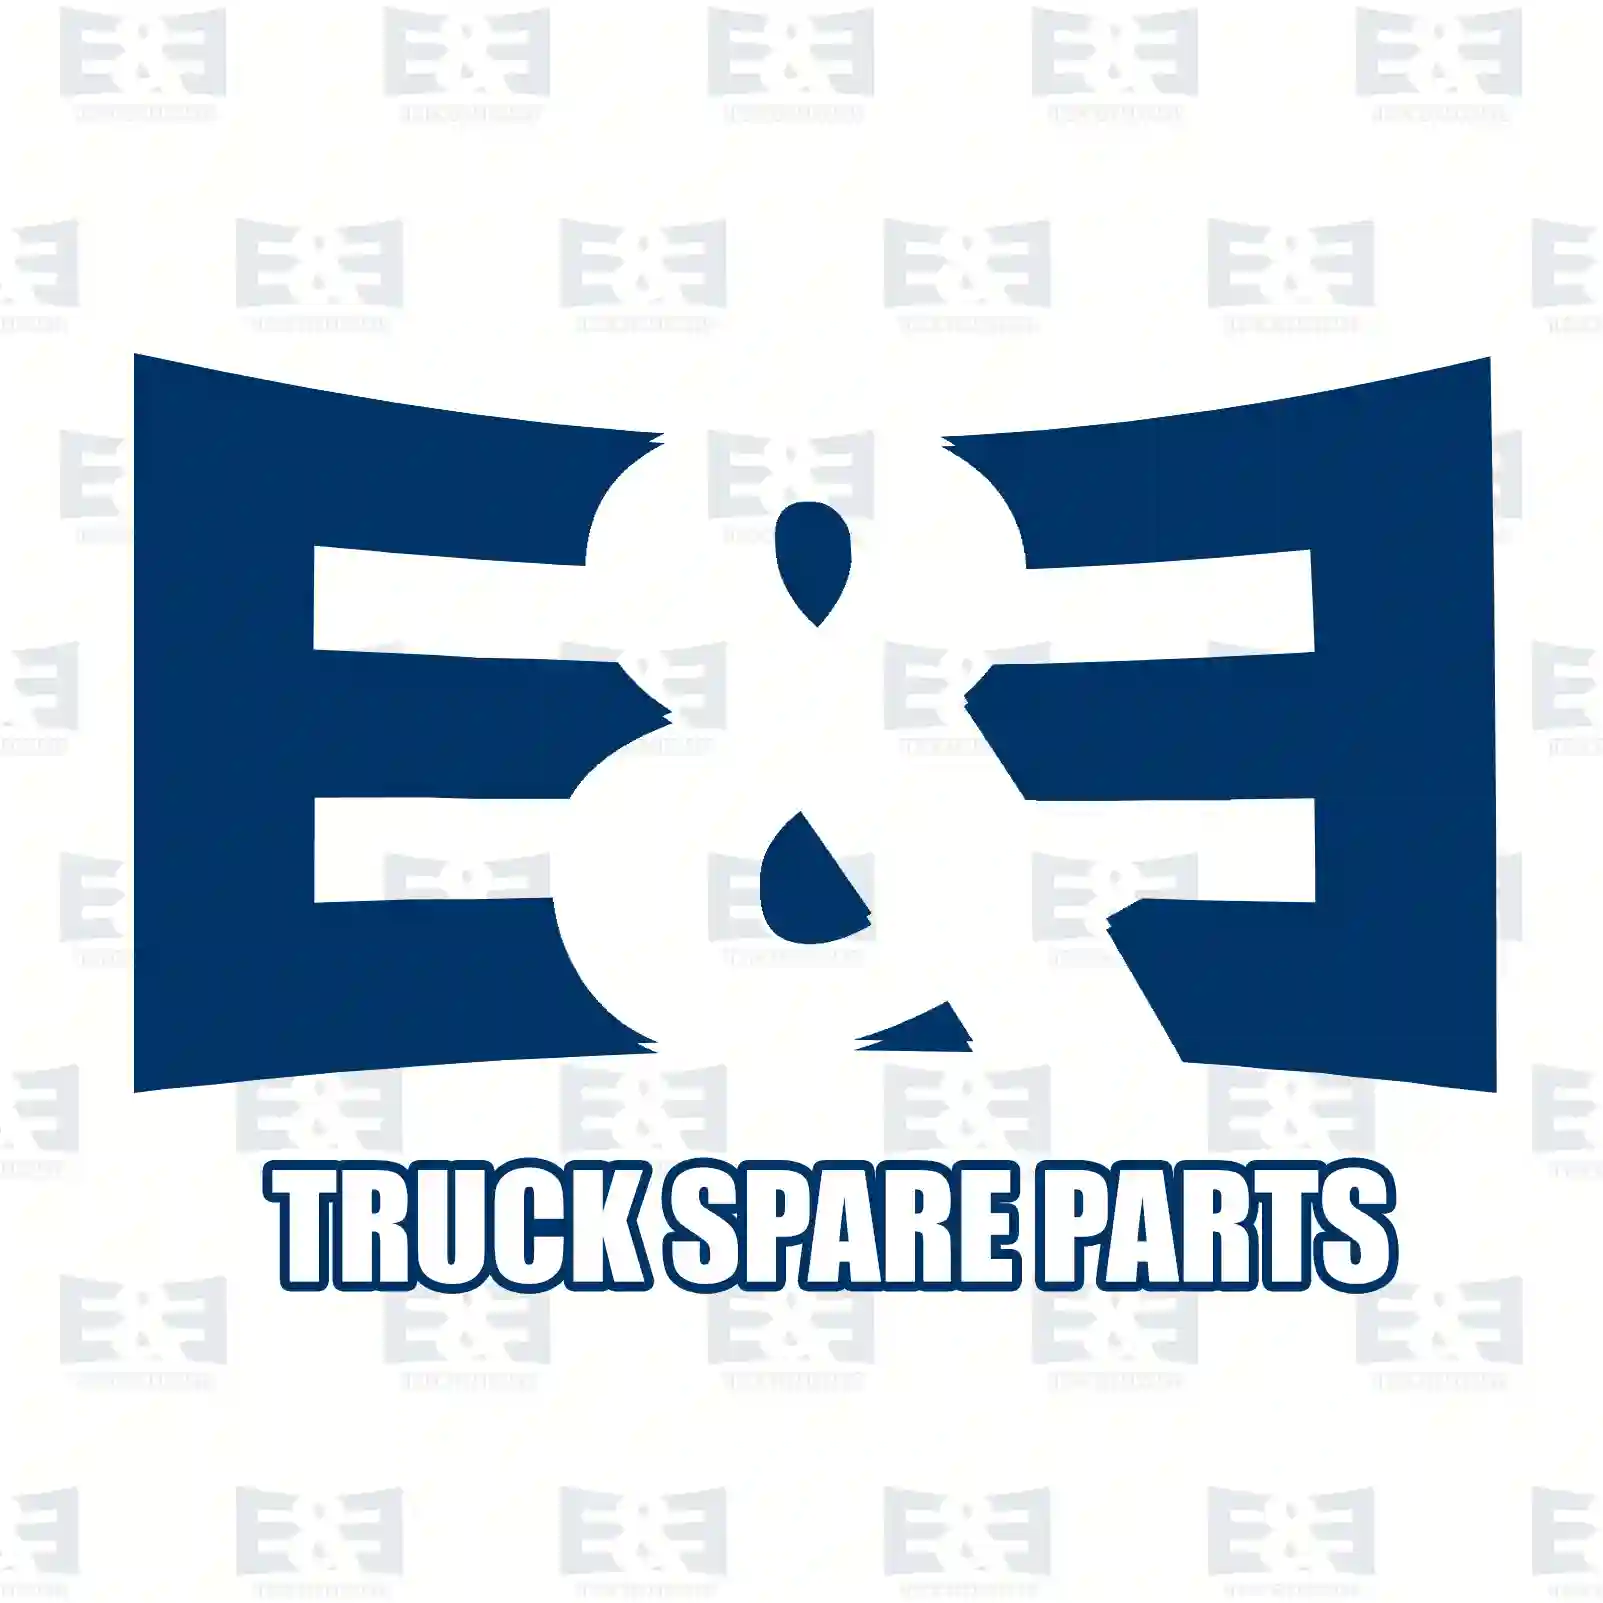 Compressor, 2E2296787, 51541006015, 5154 ||  2E2296787 E&E Truck Spare Parts | Truck Spare Parts, Auotomotive Spare Parts Compressor, 2E2296787, 51541006015, 5154 ||  2E2296787 E&E Truck Spare Parts | Truck Spare Parts, Auotomotive Spare Parts